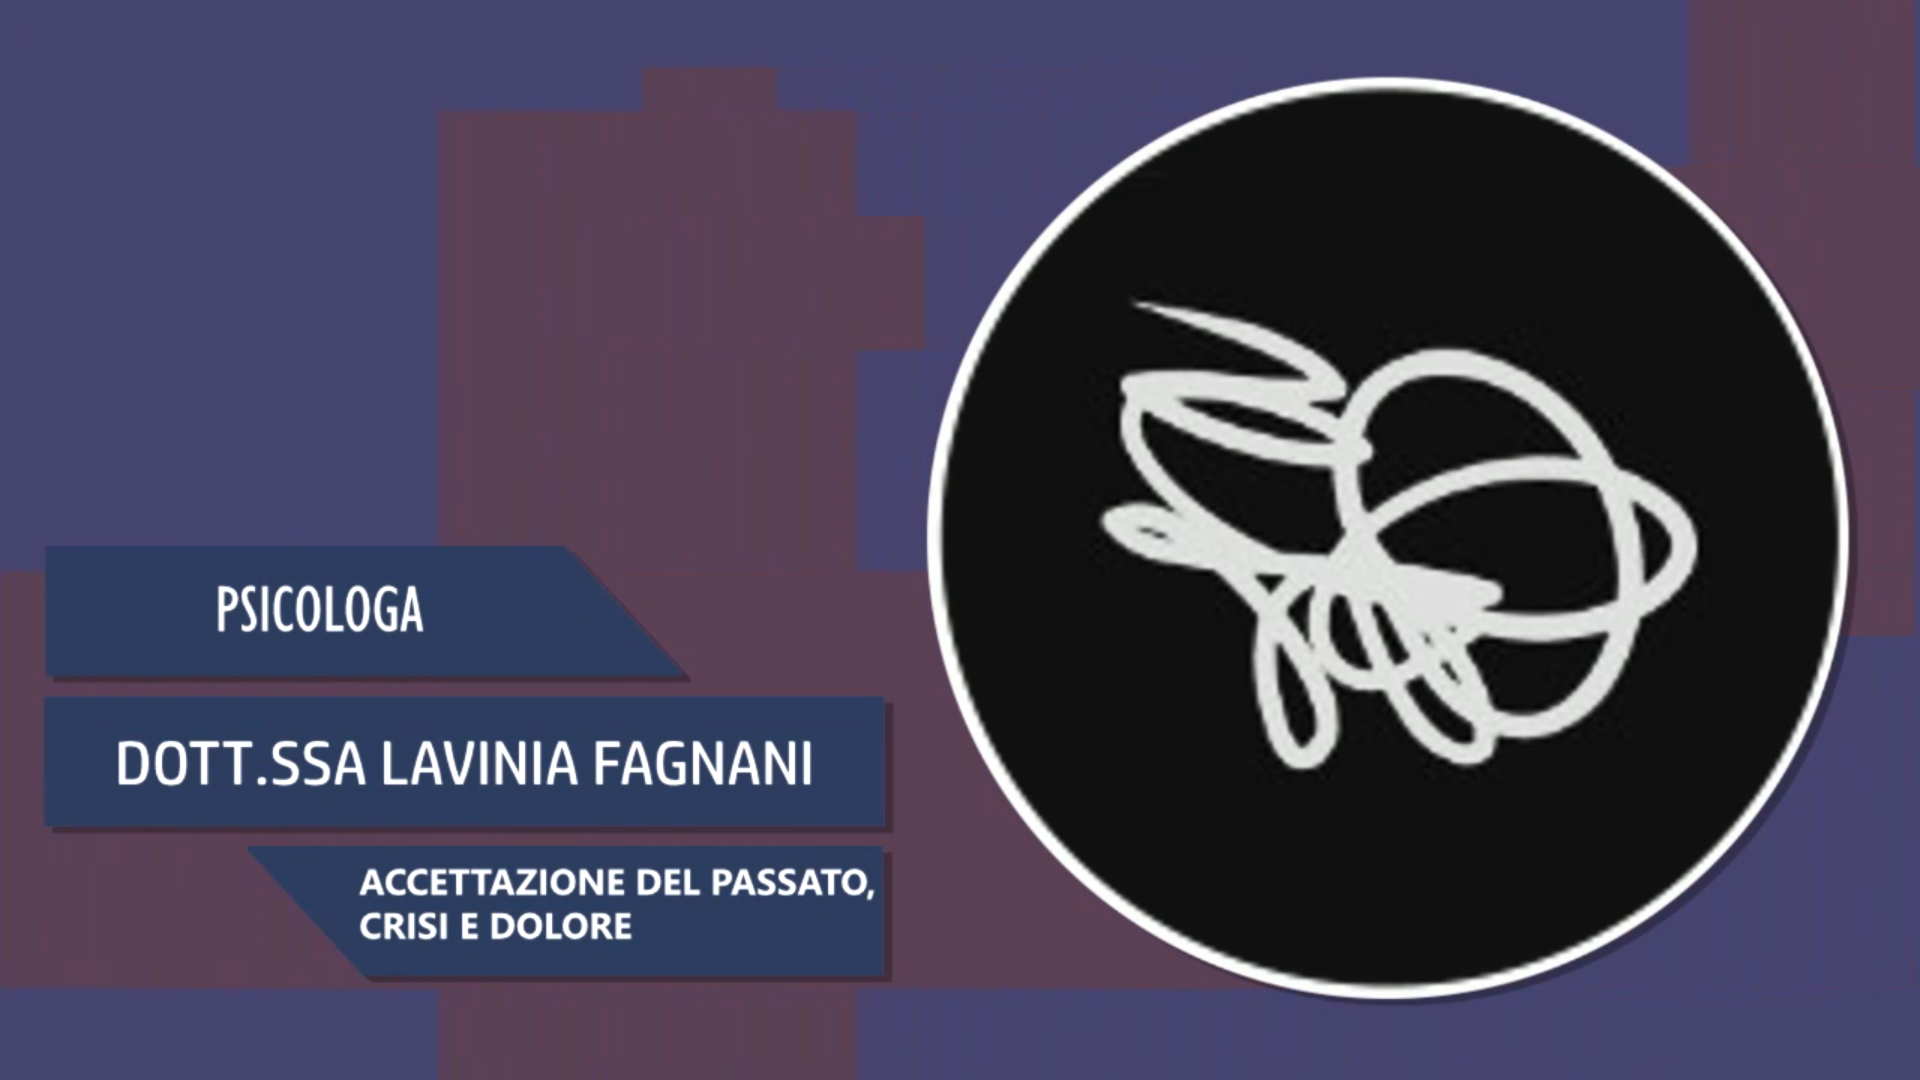 Intervista alla Dott.ssa Lavinia Fagnani – Accettazione del passato, crisi e dolore